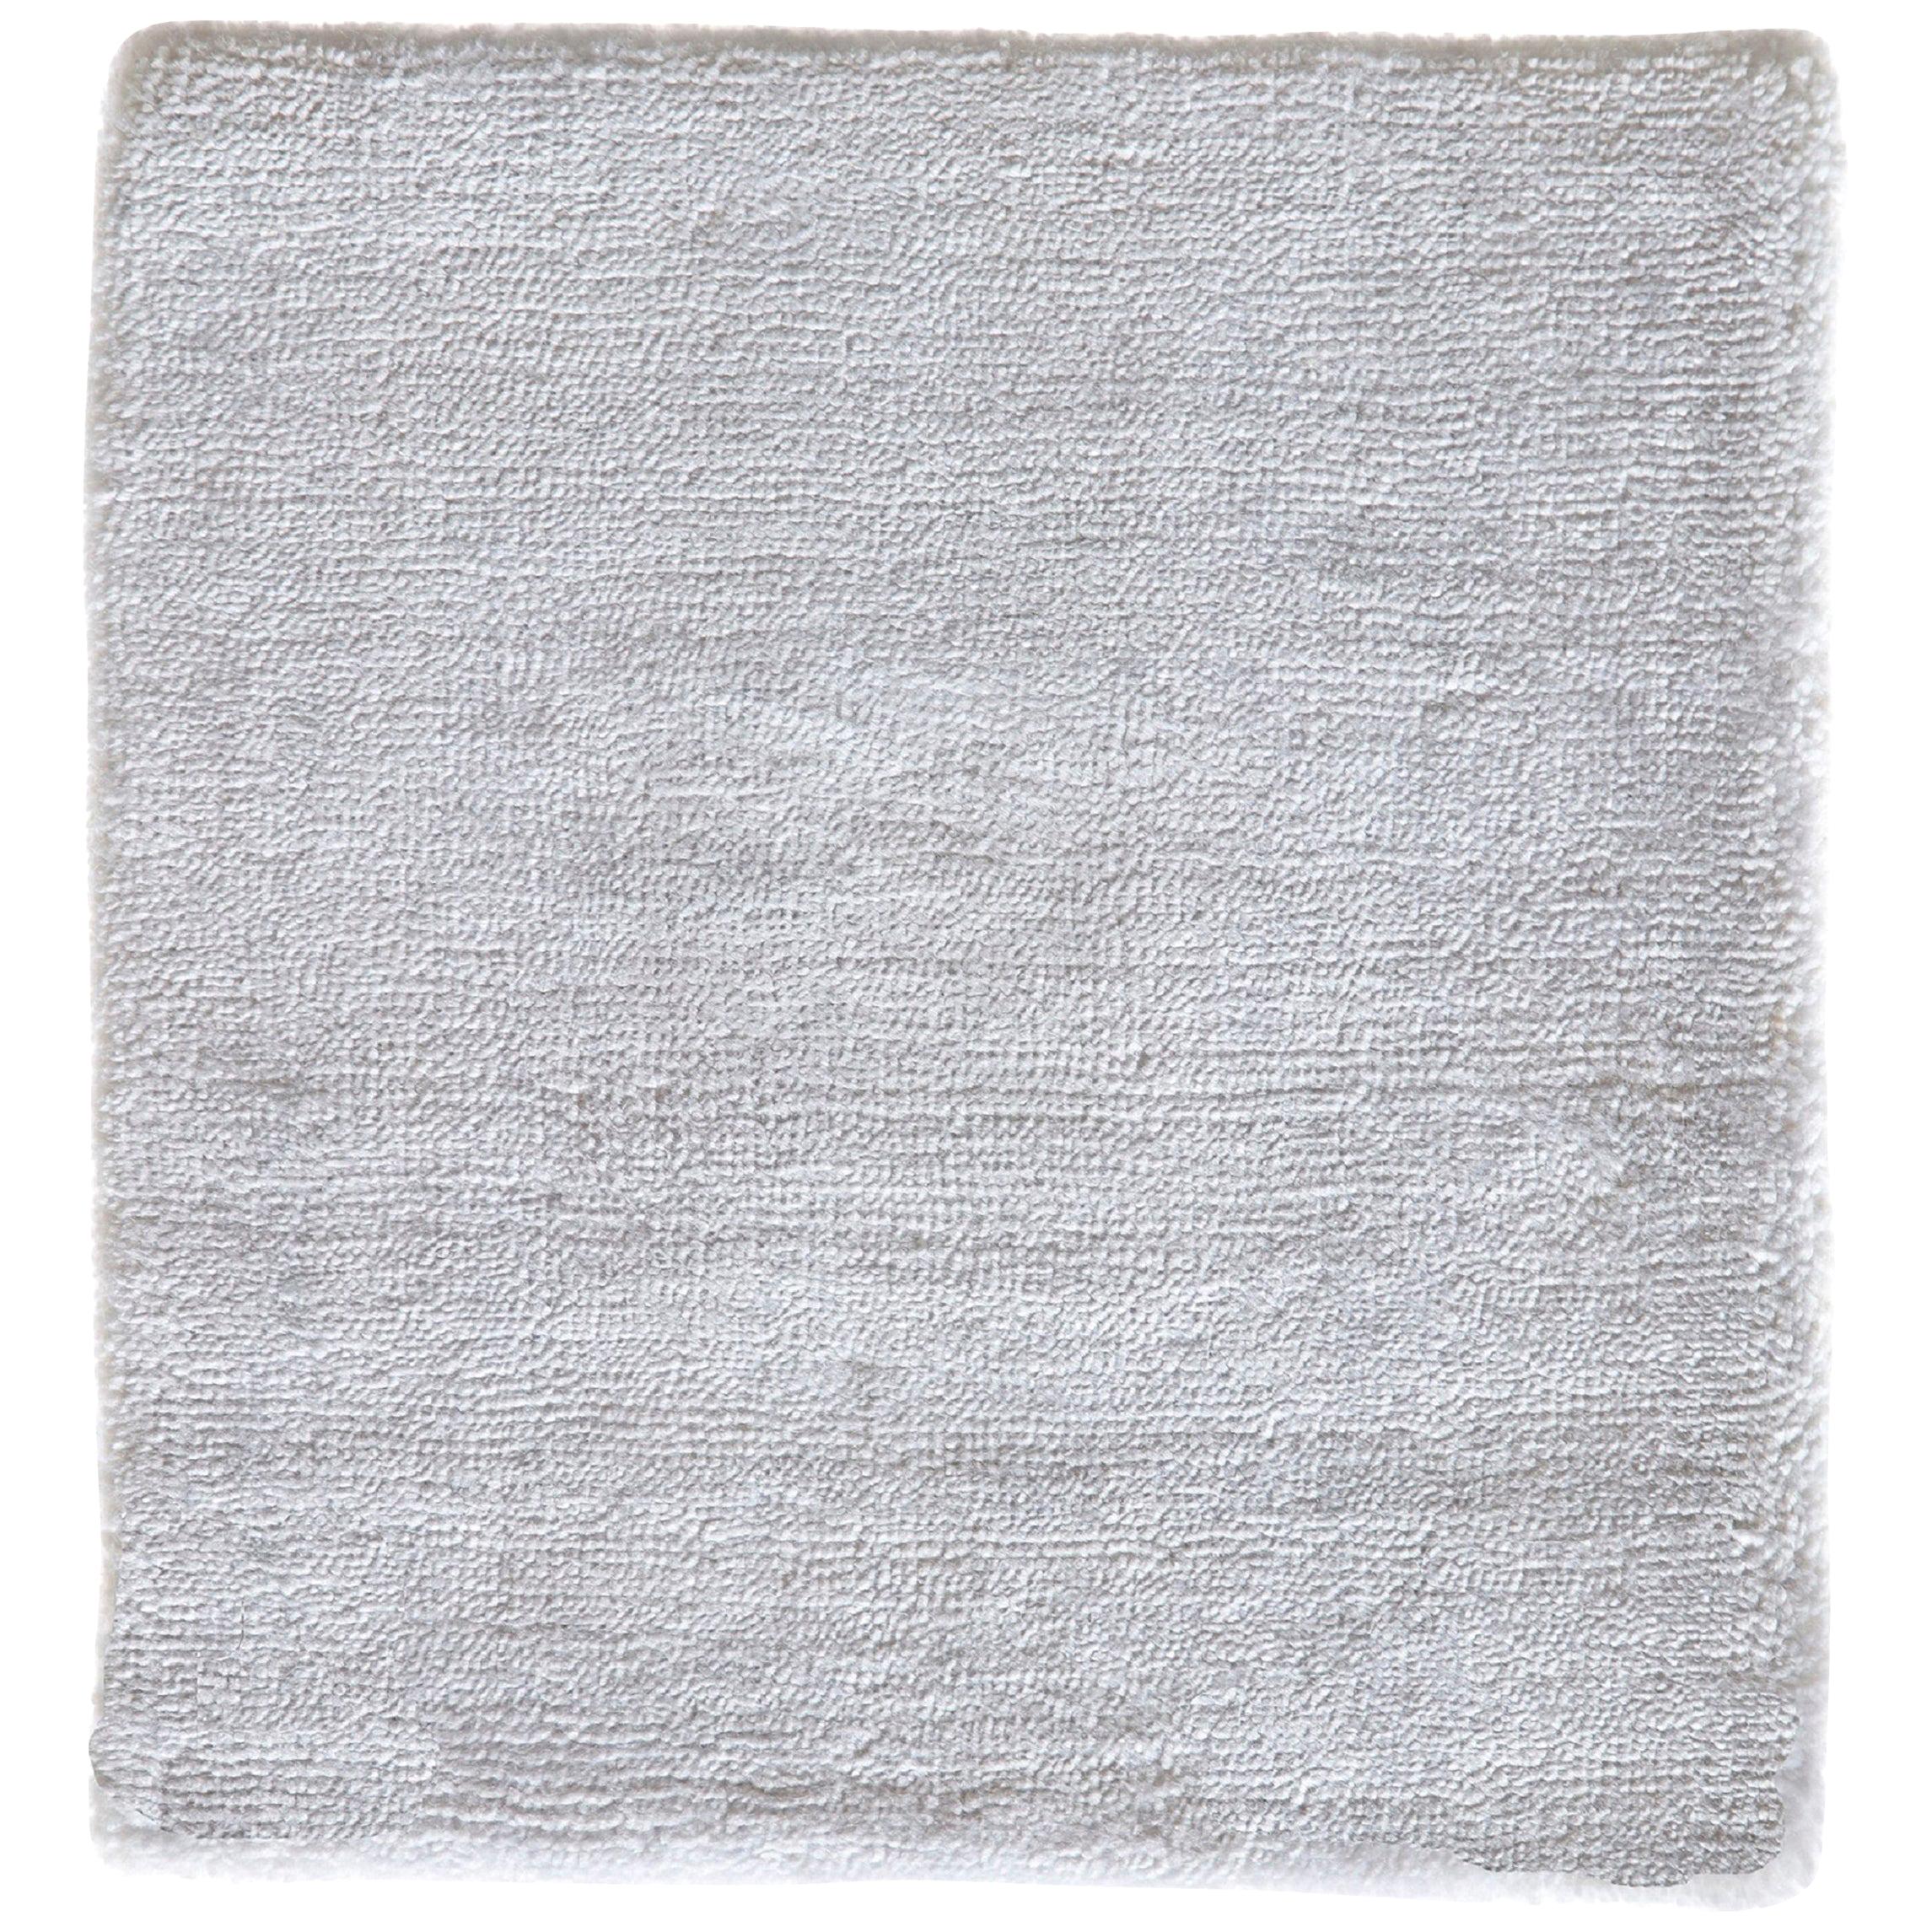 Moderner weißer handgefertigter minimalistischer Neutral-Teppich aus Bambusseide